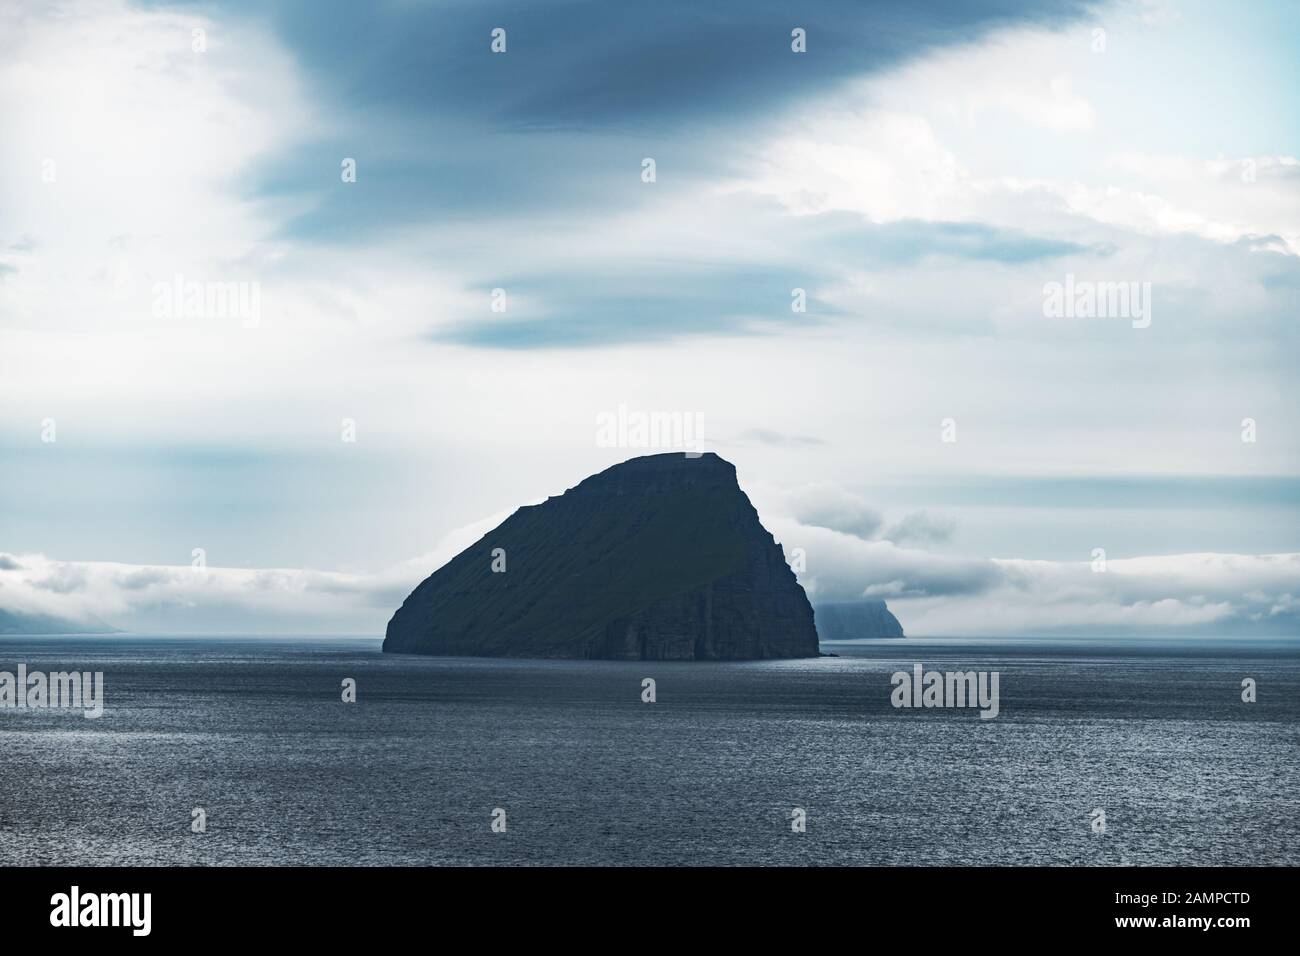 Vue spectaculaire sur l'île de Koltur dans l'océan Atlantique. Îles Féroé, Danemark. Photographie de paysage Banque D'Images